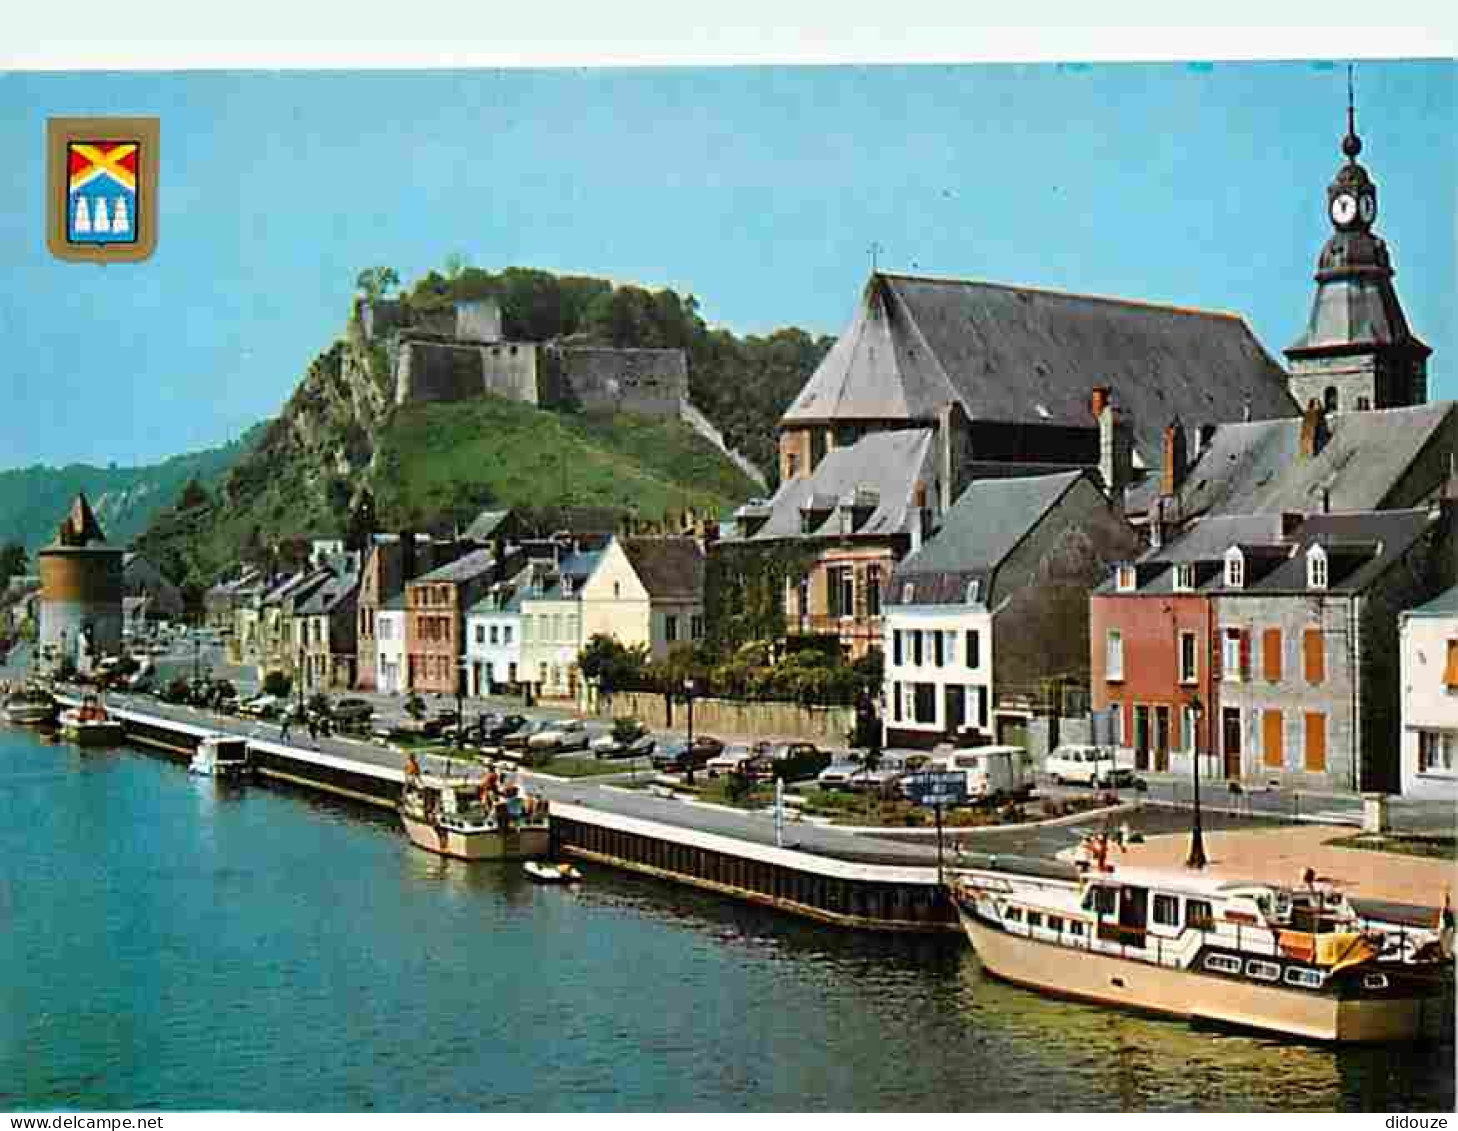 08 - Givet - Le Fort De Charlemont - Bords De Meuse Avec L'Eglise St. Hilaire Et La Tour Victoire - Automobiles - Bateau - Givet